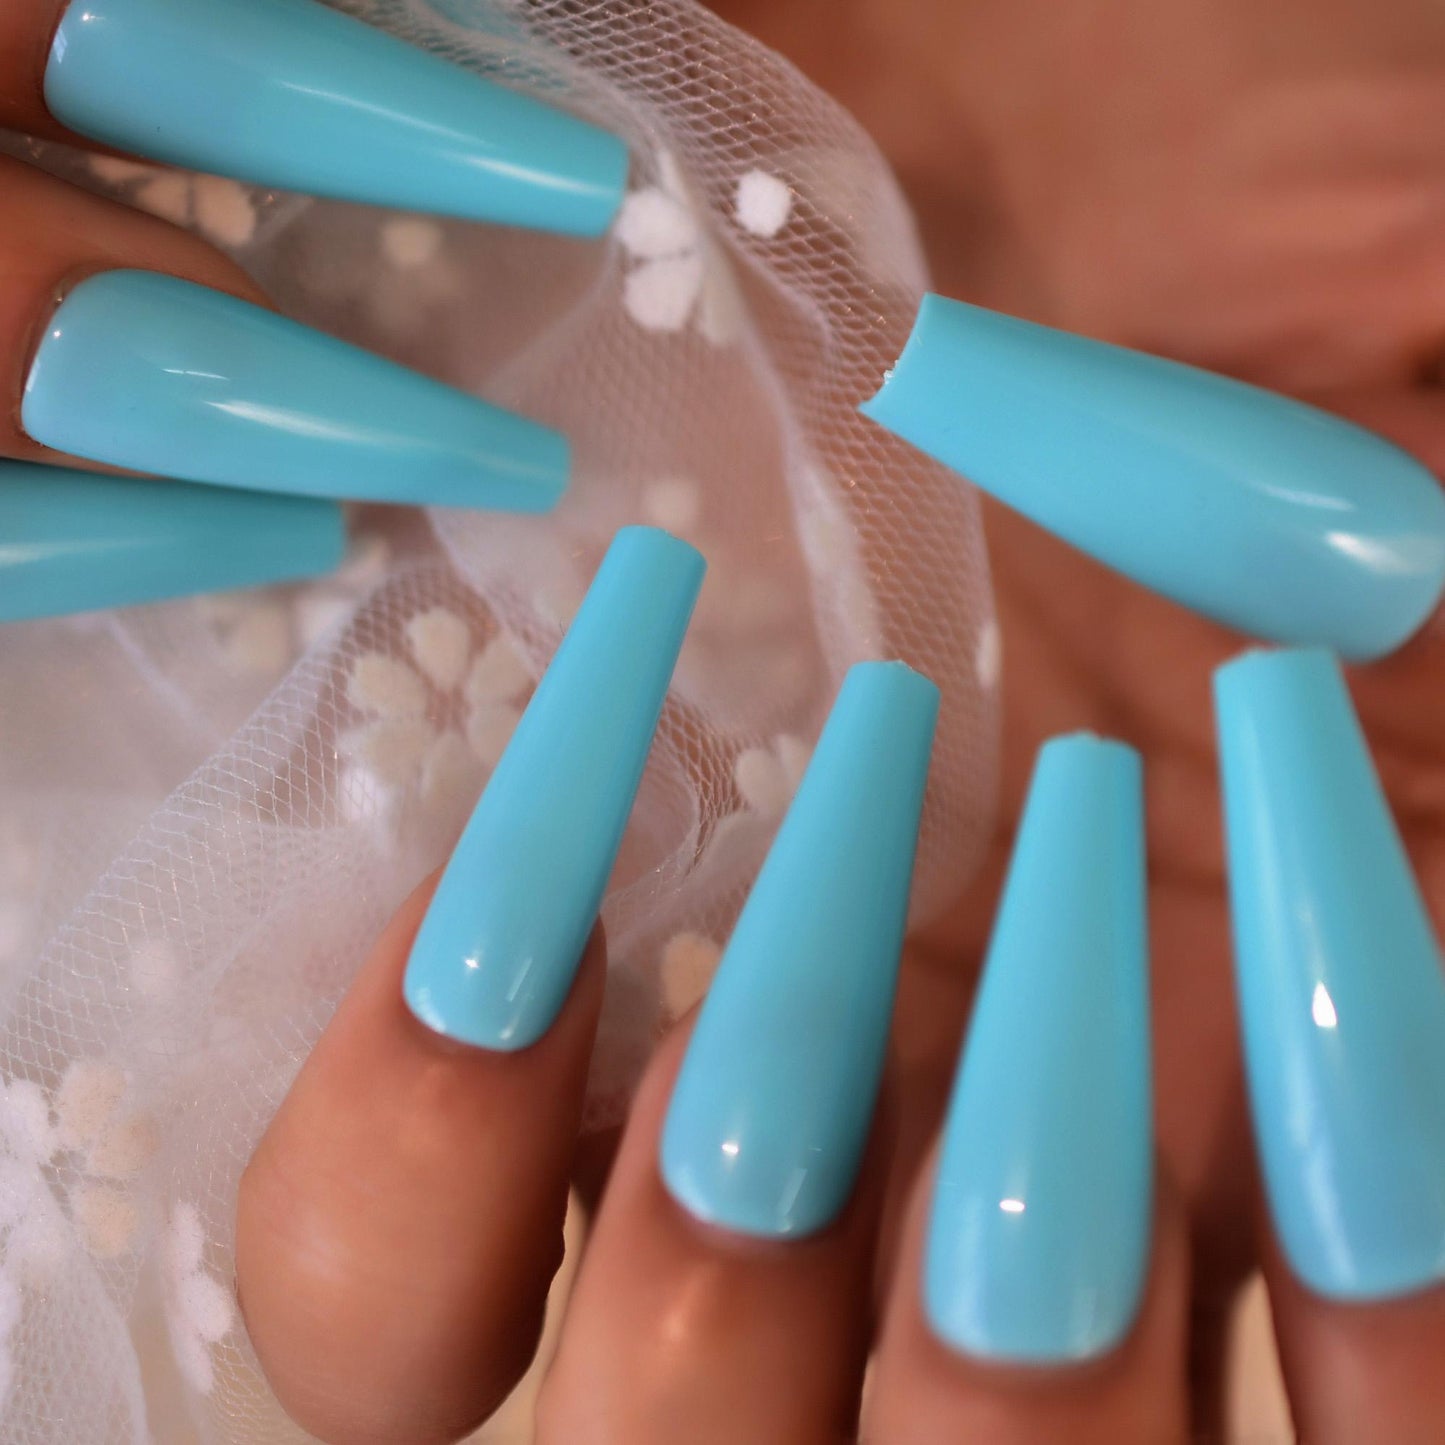 Light Blue Full-covered Fake Nail Tips